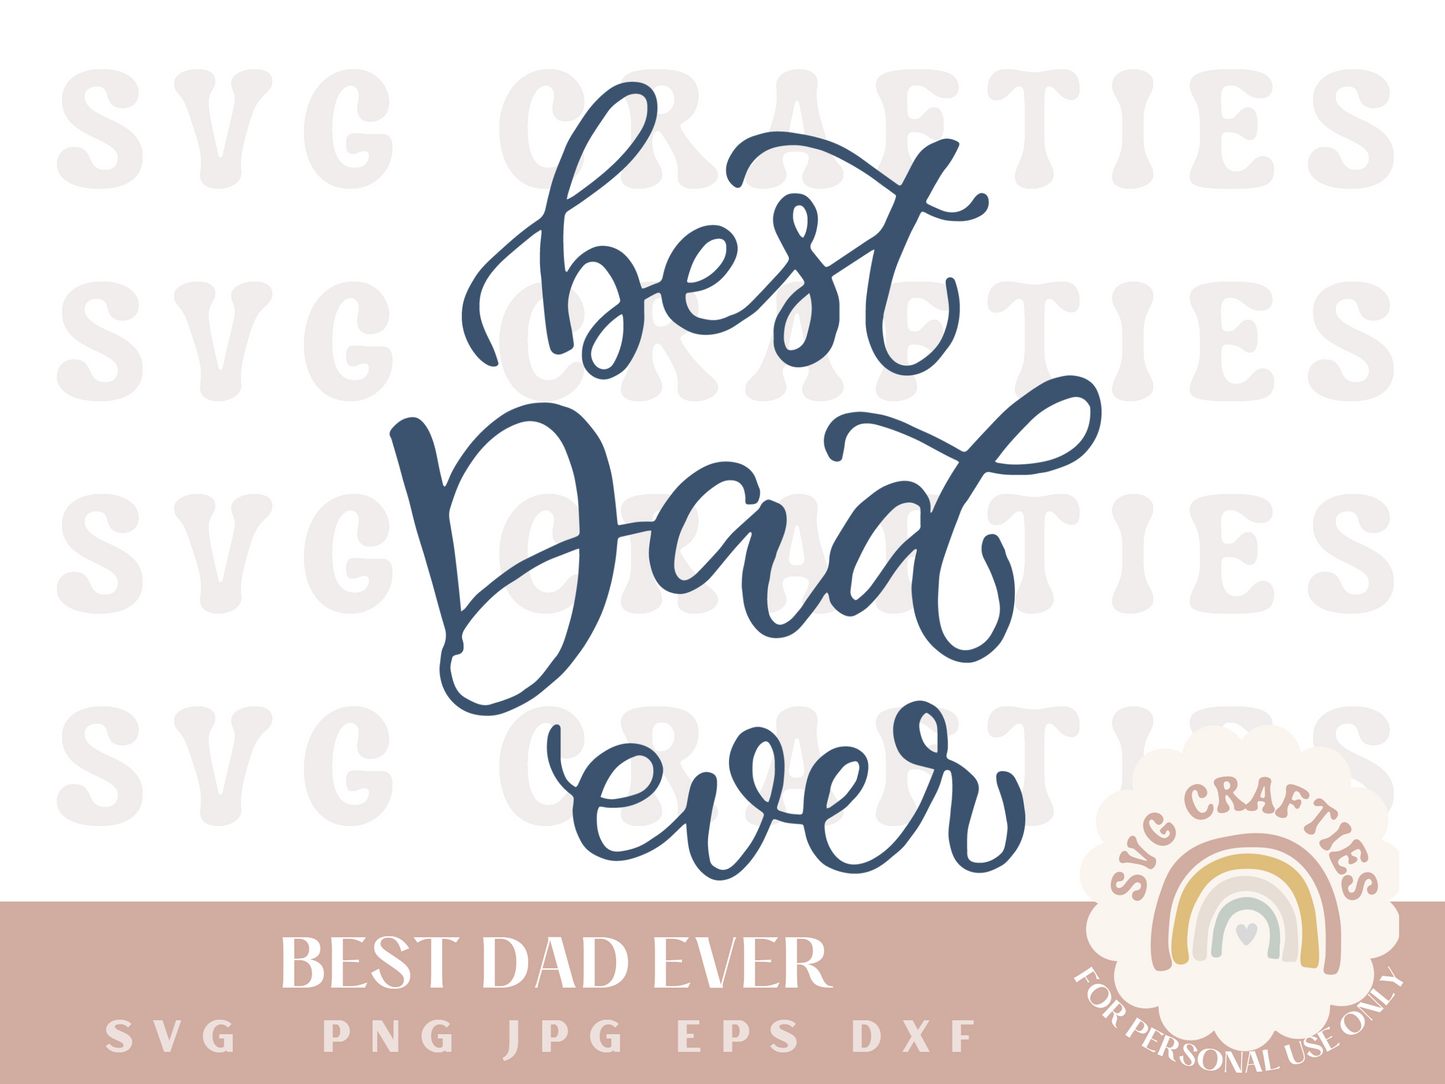 Best Dad Ever Free SVG Download